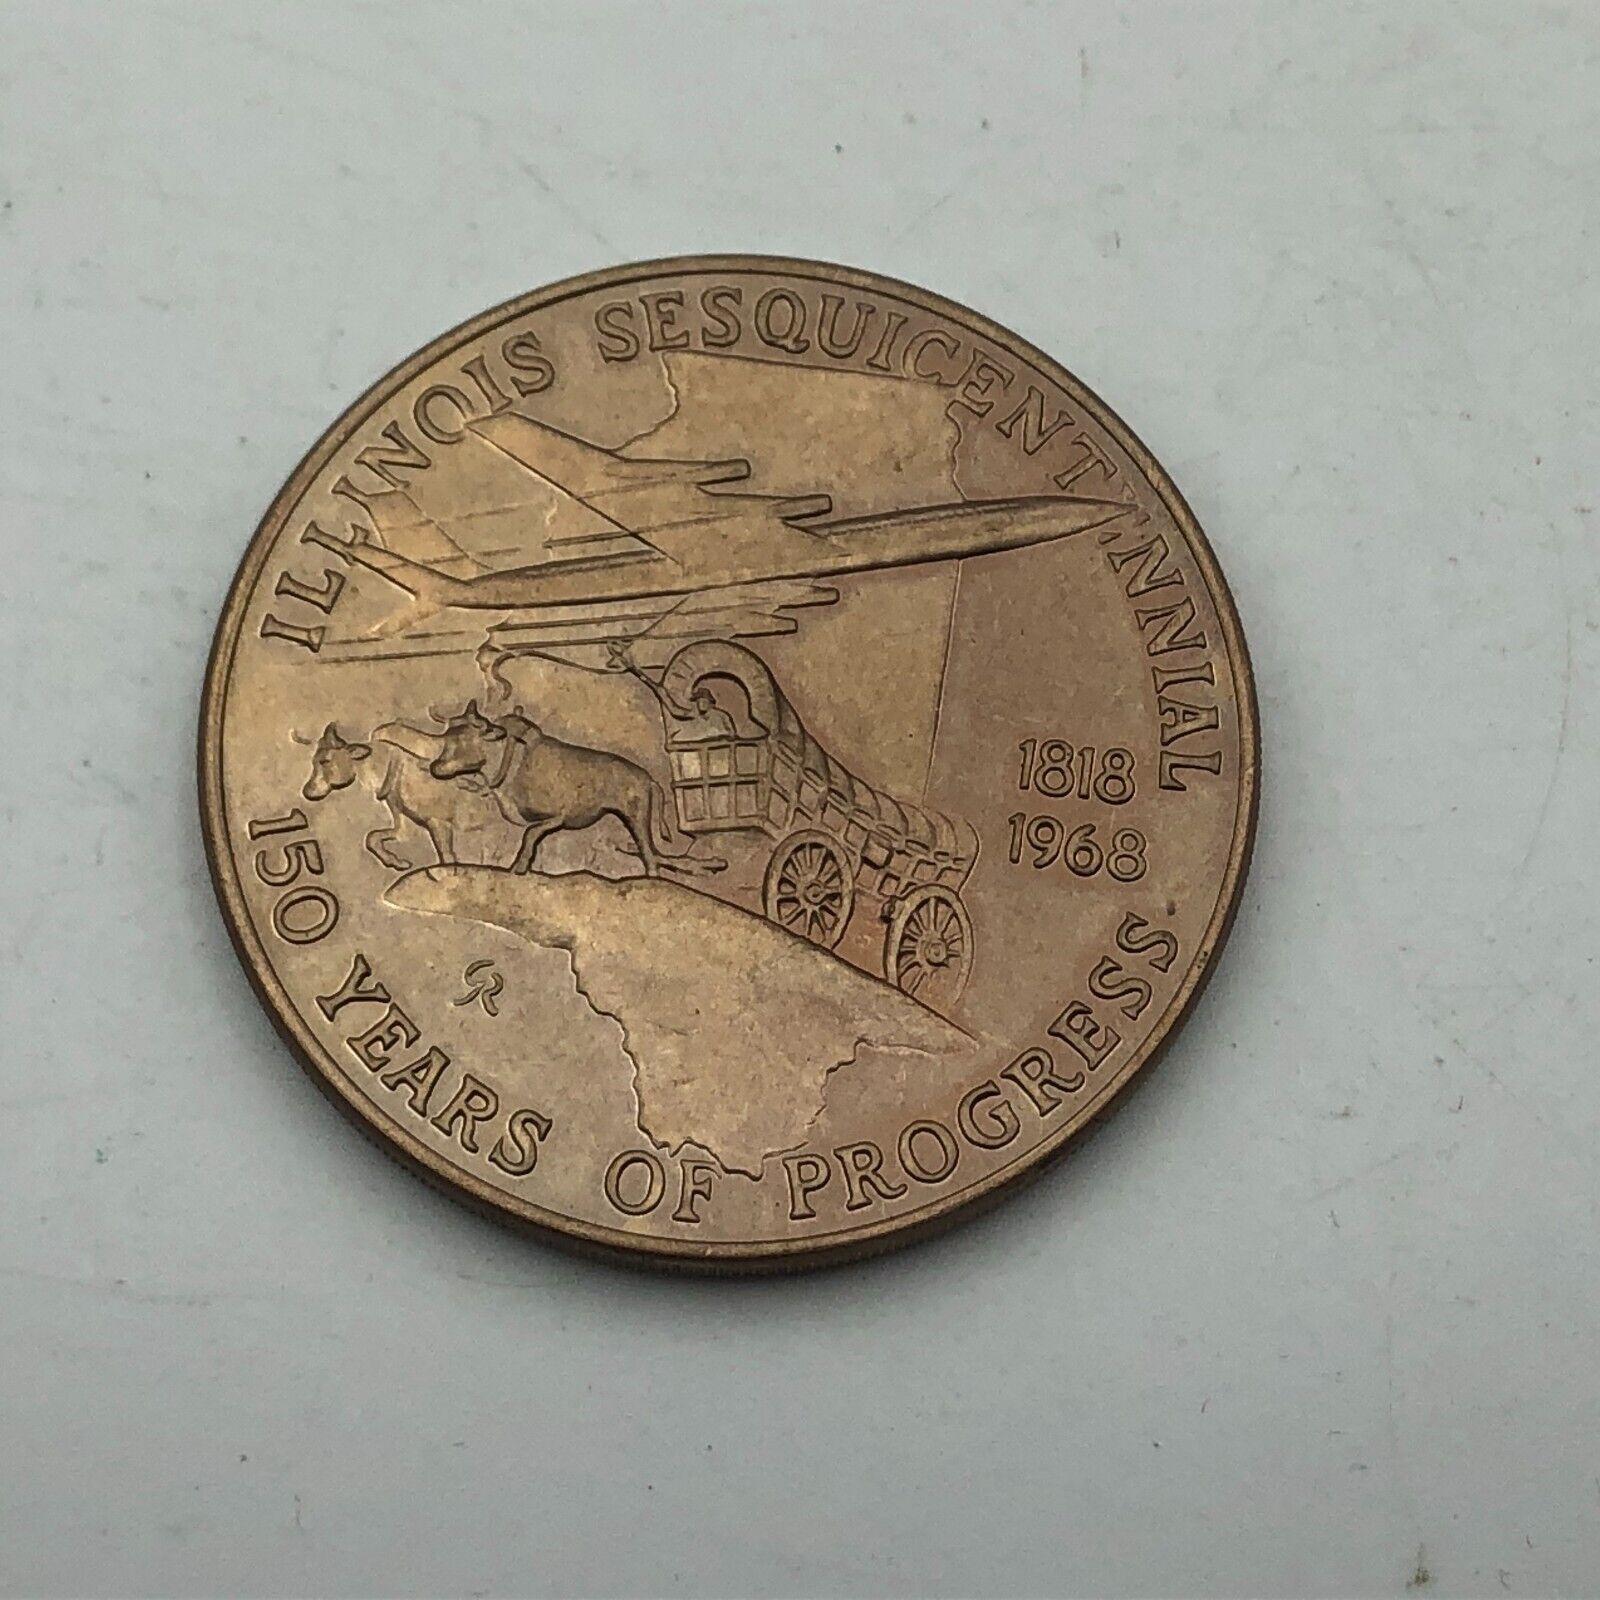 Illinois State Seal Coin Token Medallion 150 Years Progress 1818-1968 Vintage